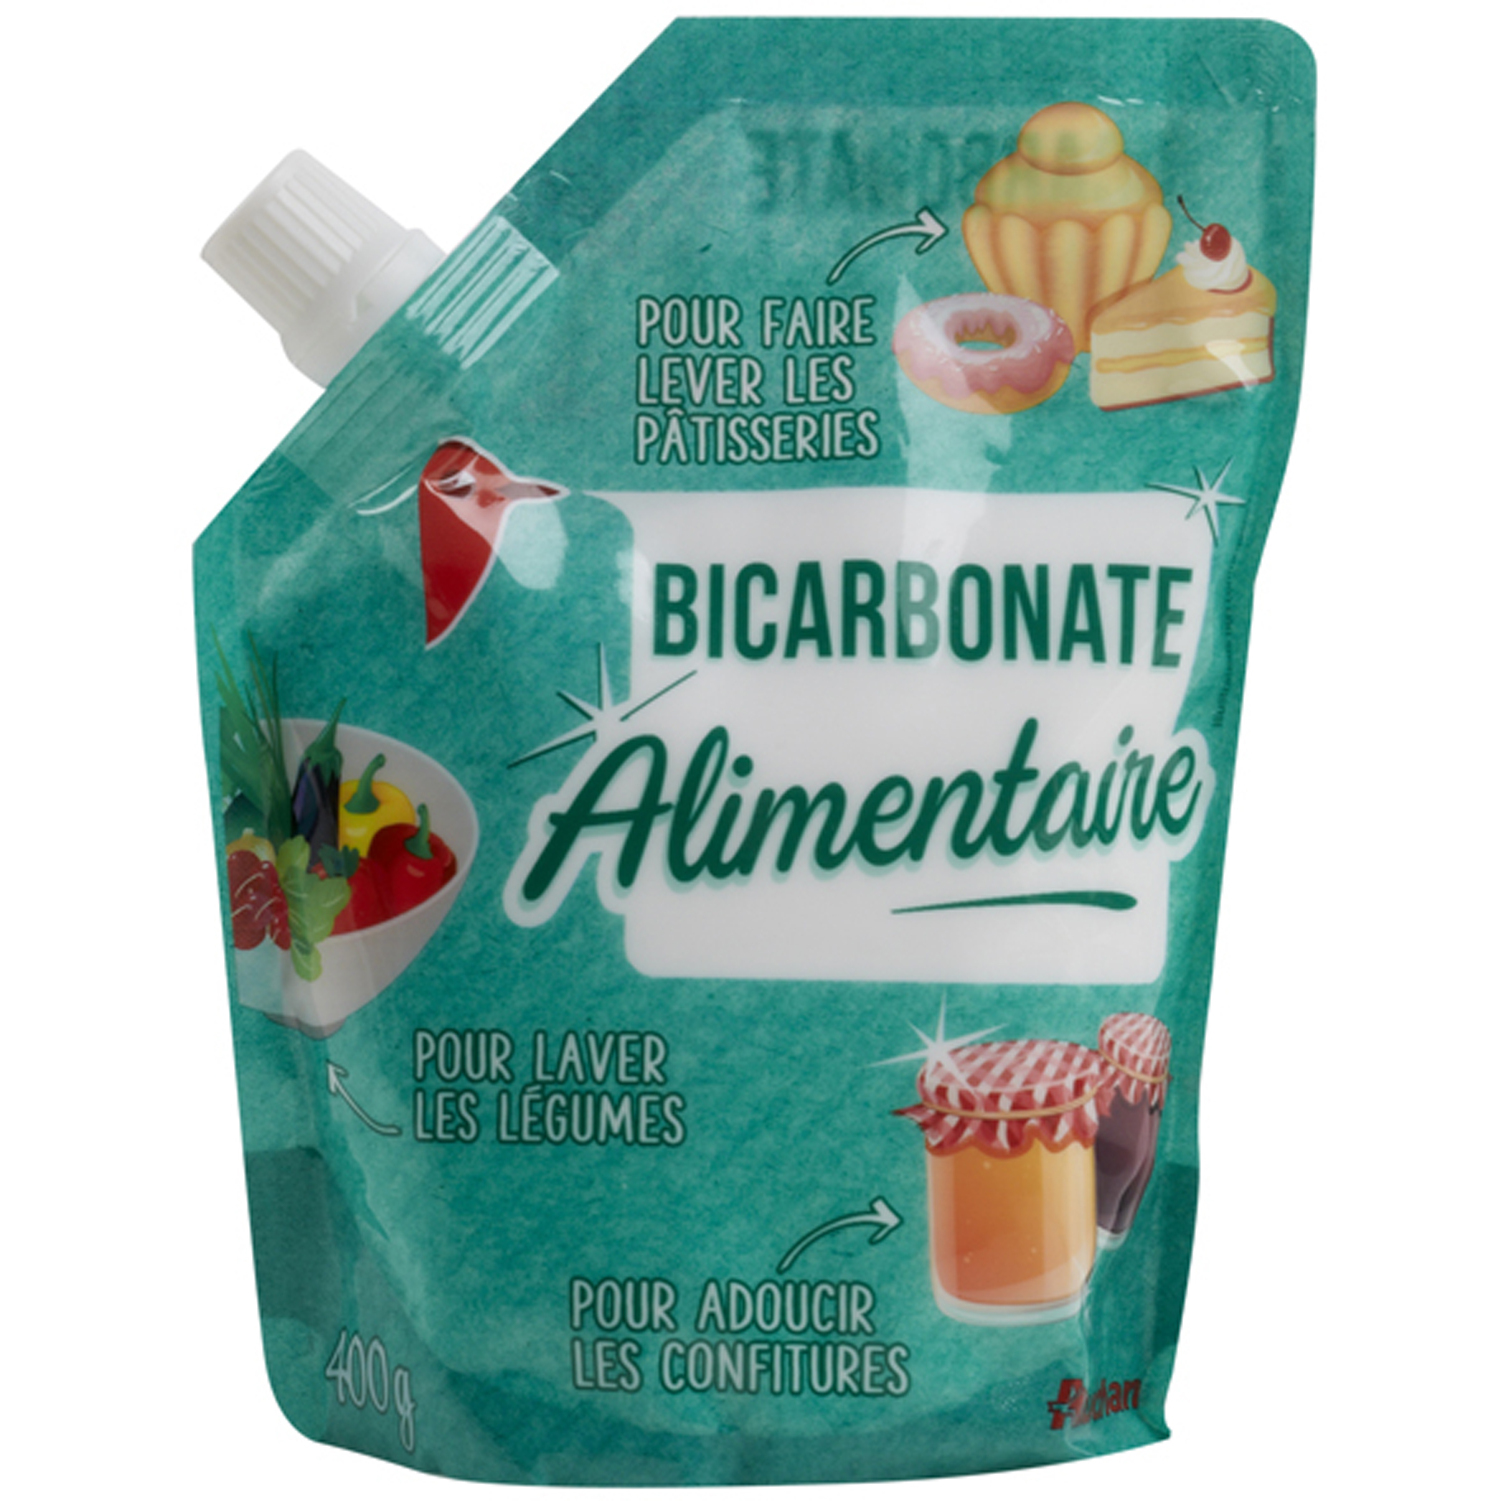 Bicarbonate de soude alimentaire : utilisation, cuisson